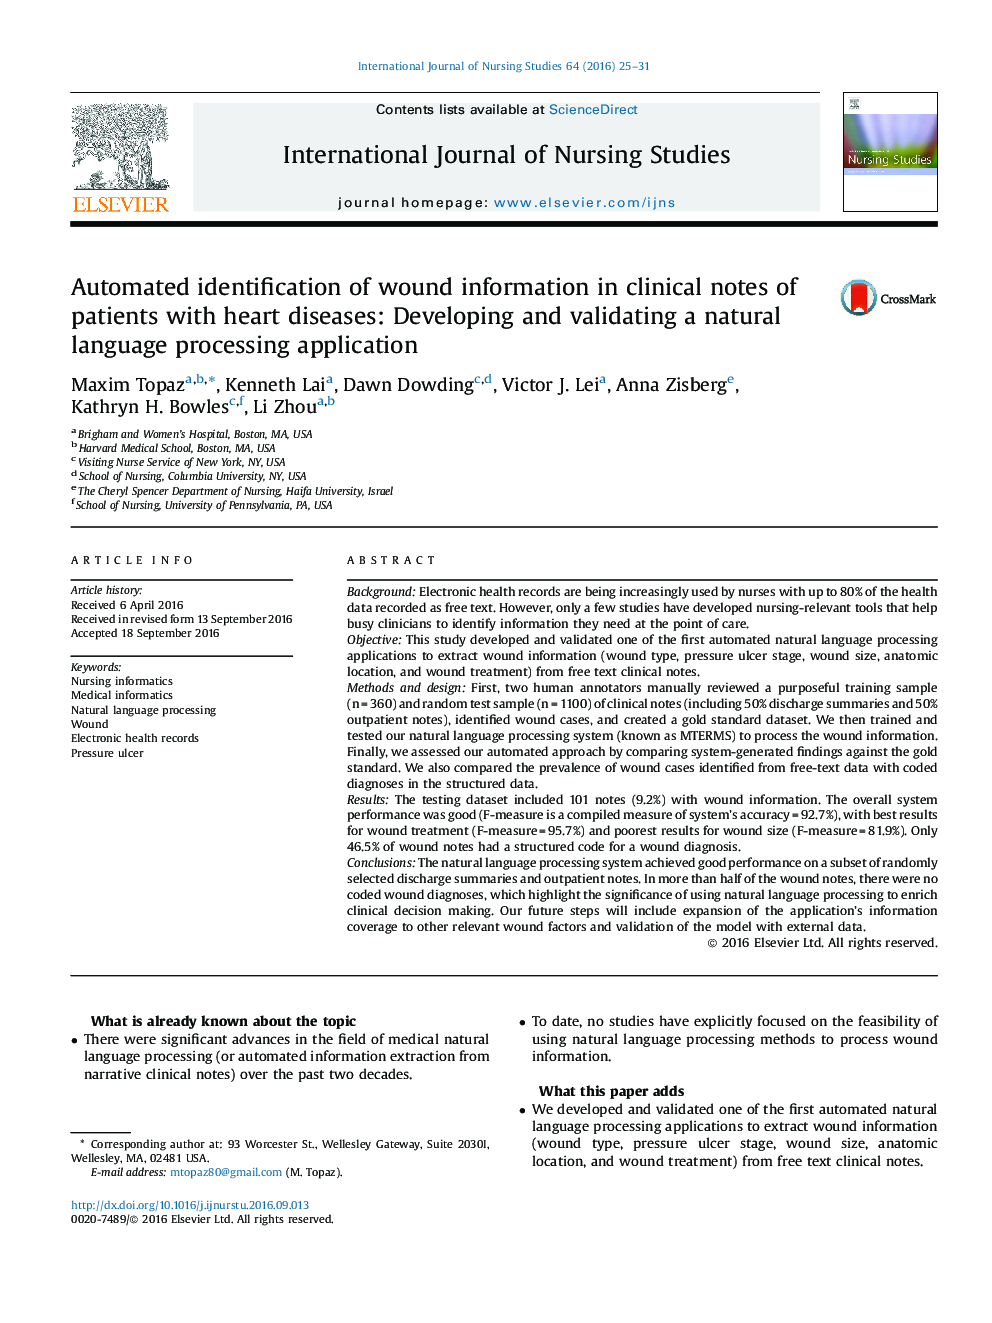 شناسایی خودکار اطلاعات زخم در یادداشت های بالینی بیماران مبتلا به بیماری های قلبی: توسعه و اعتبار یک برنامه پردازش زبان طبیعی 